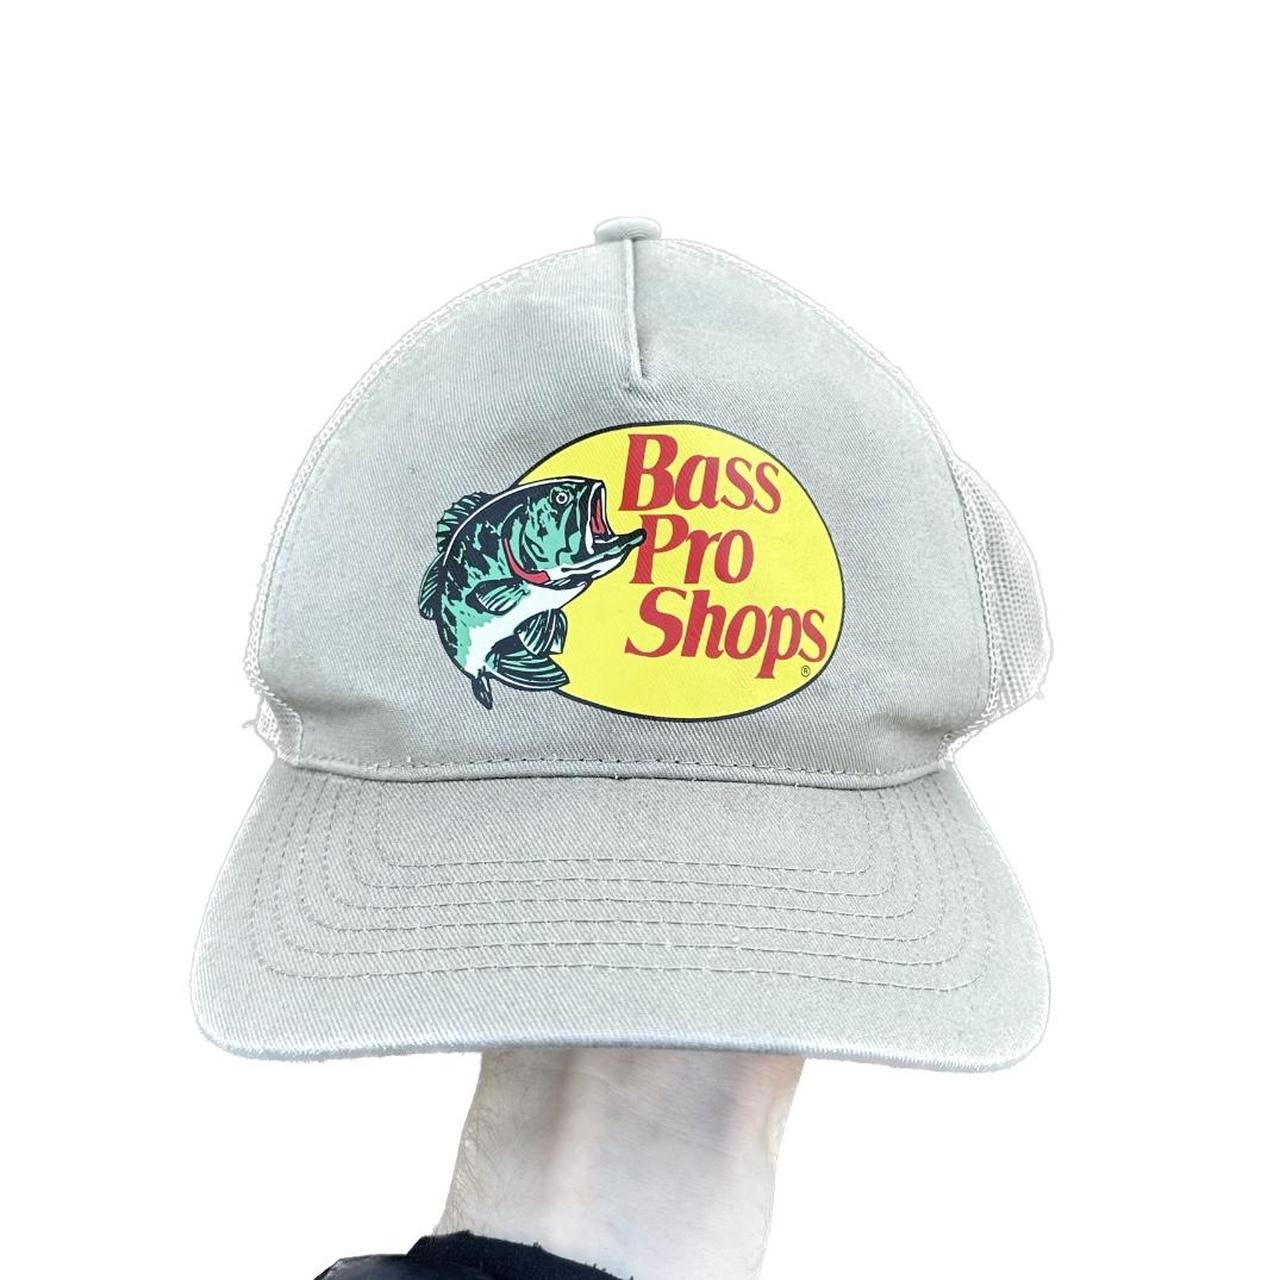 Bass Pro Shop Trucker Hat Tan bass pro shop trucker - Depop